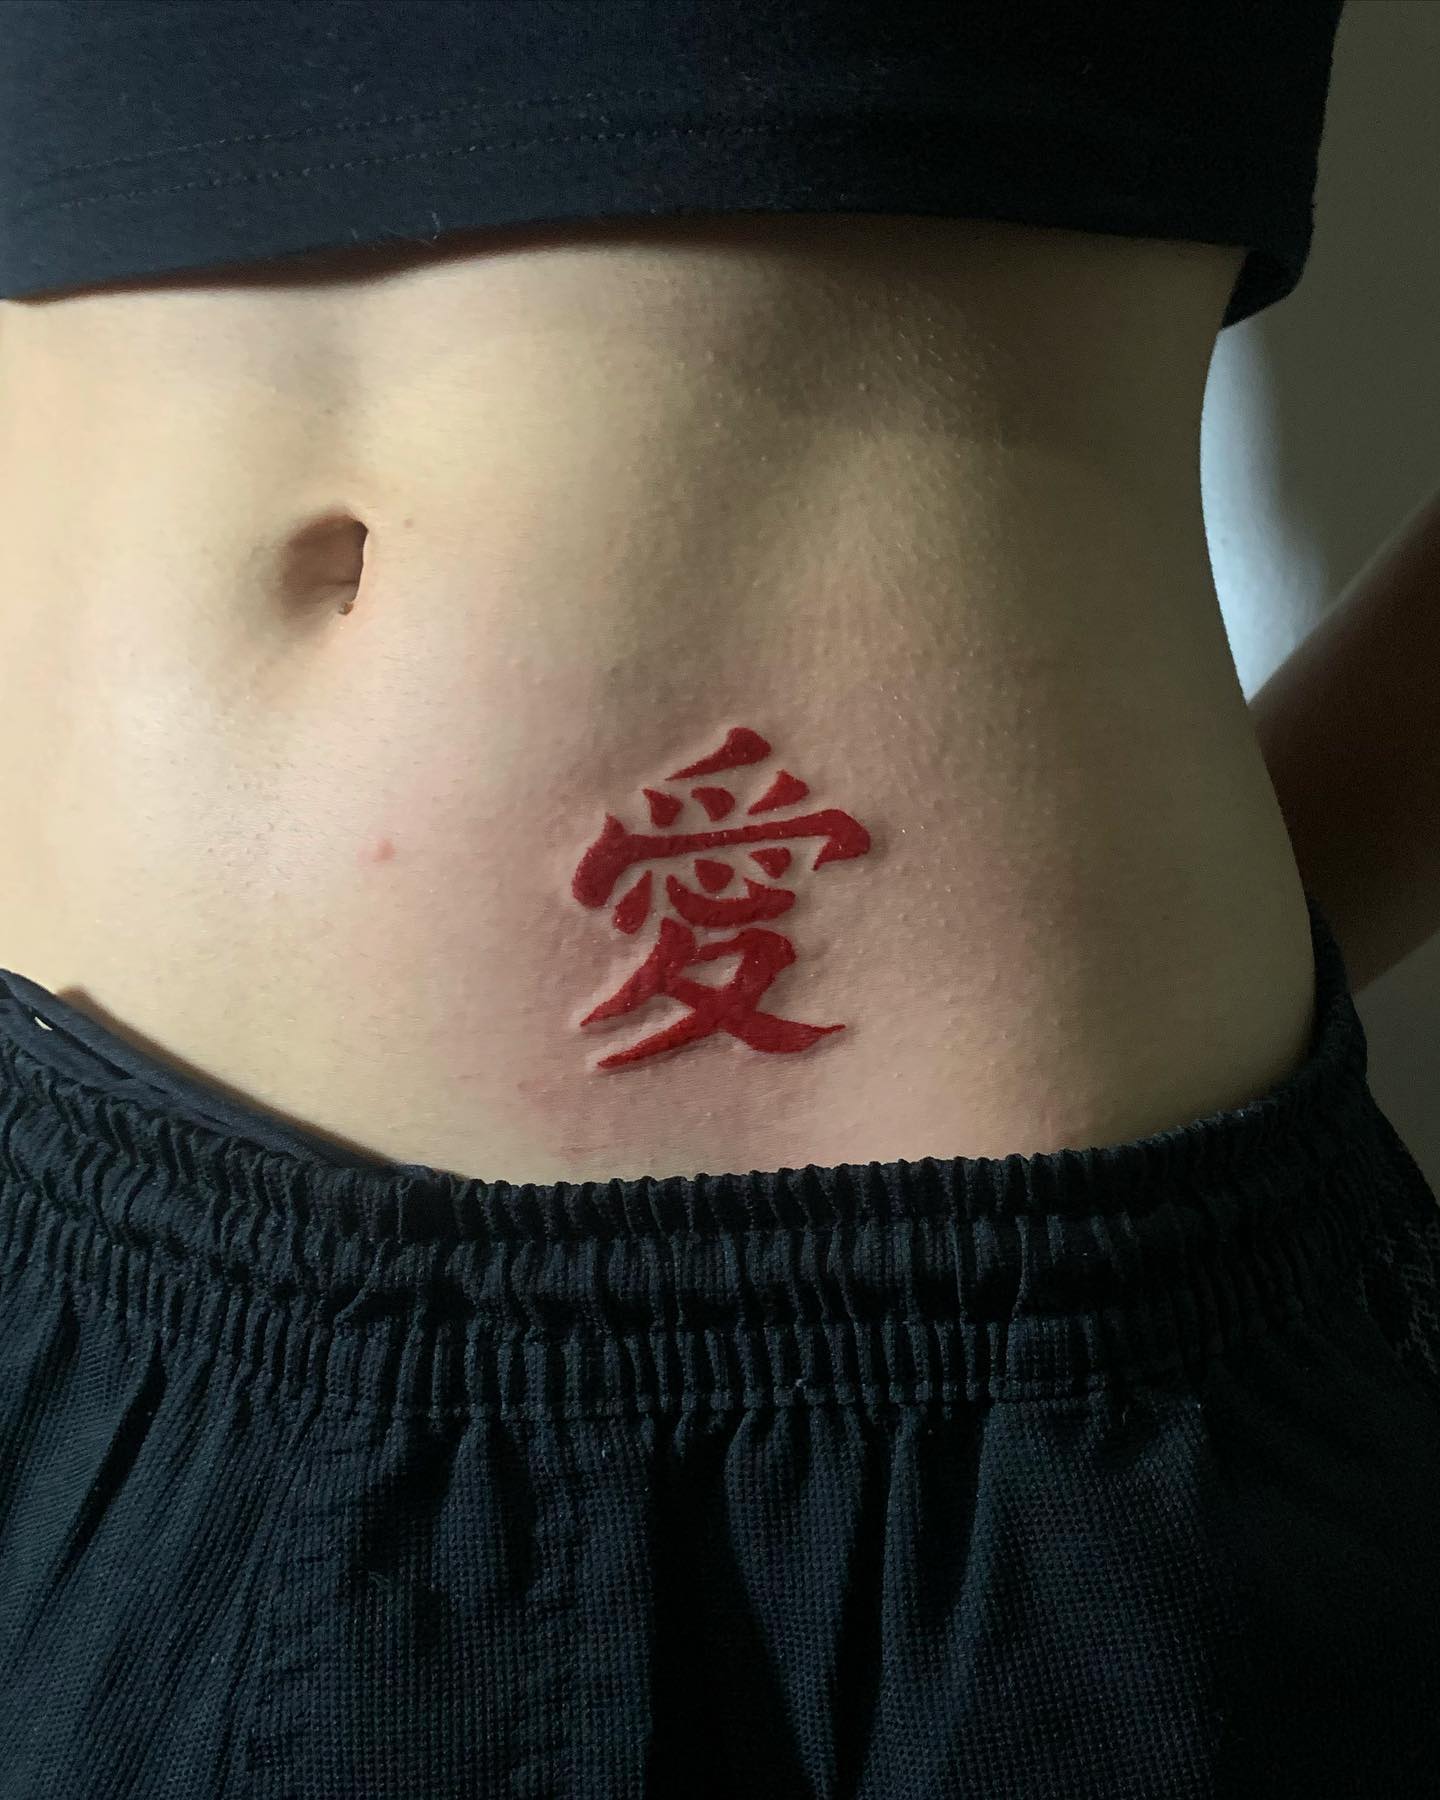 Tatuaje de Gaara en estómago rojo genial